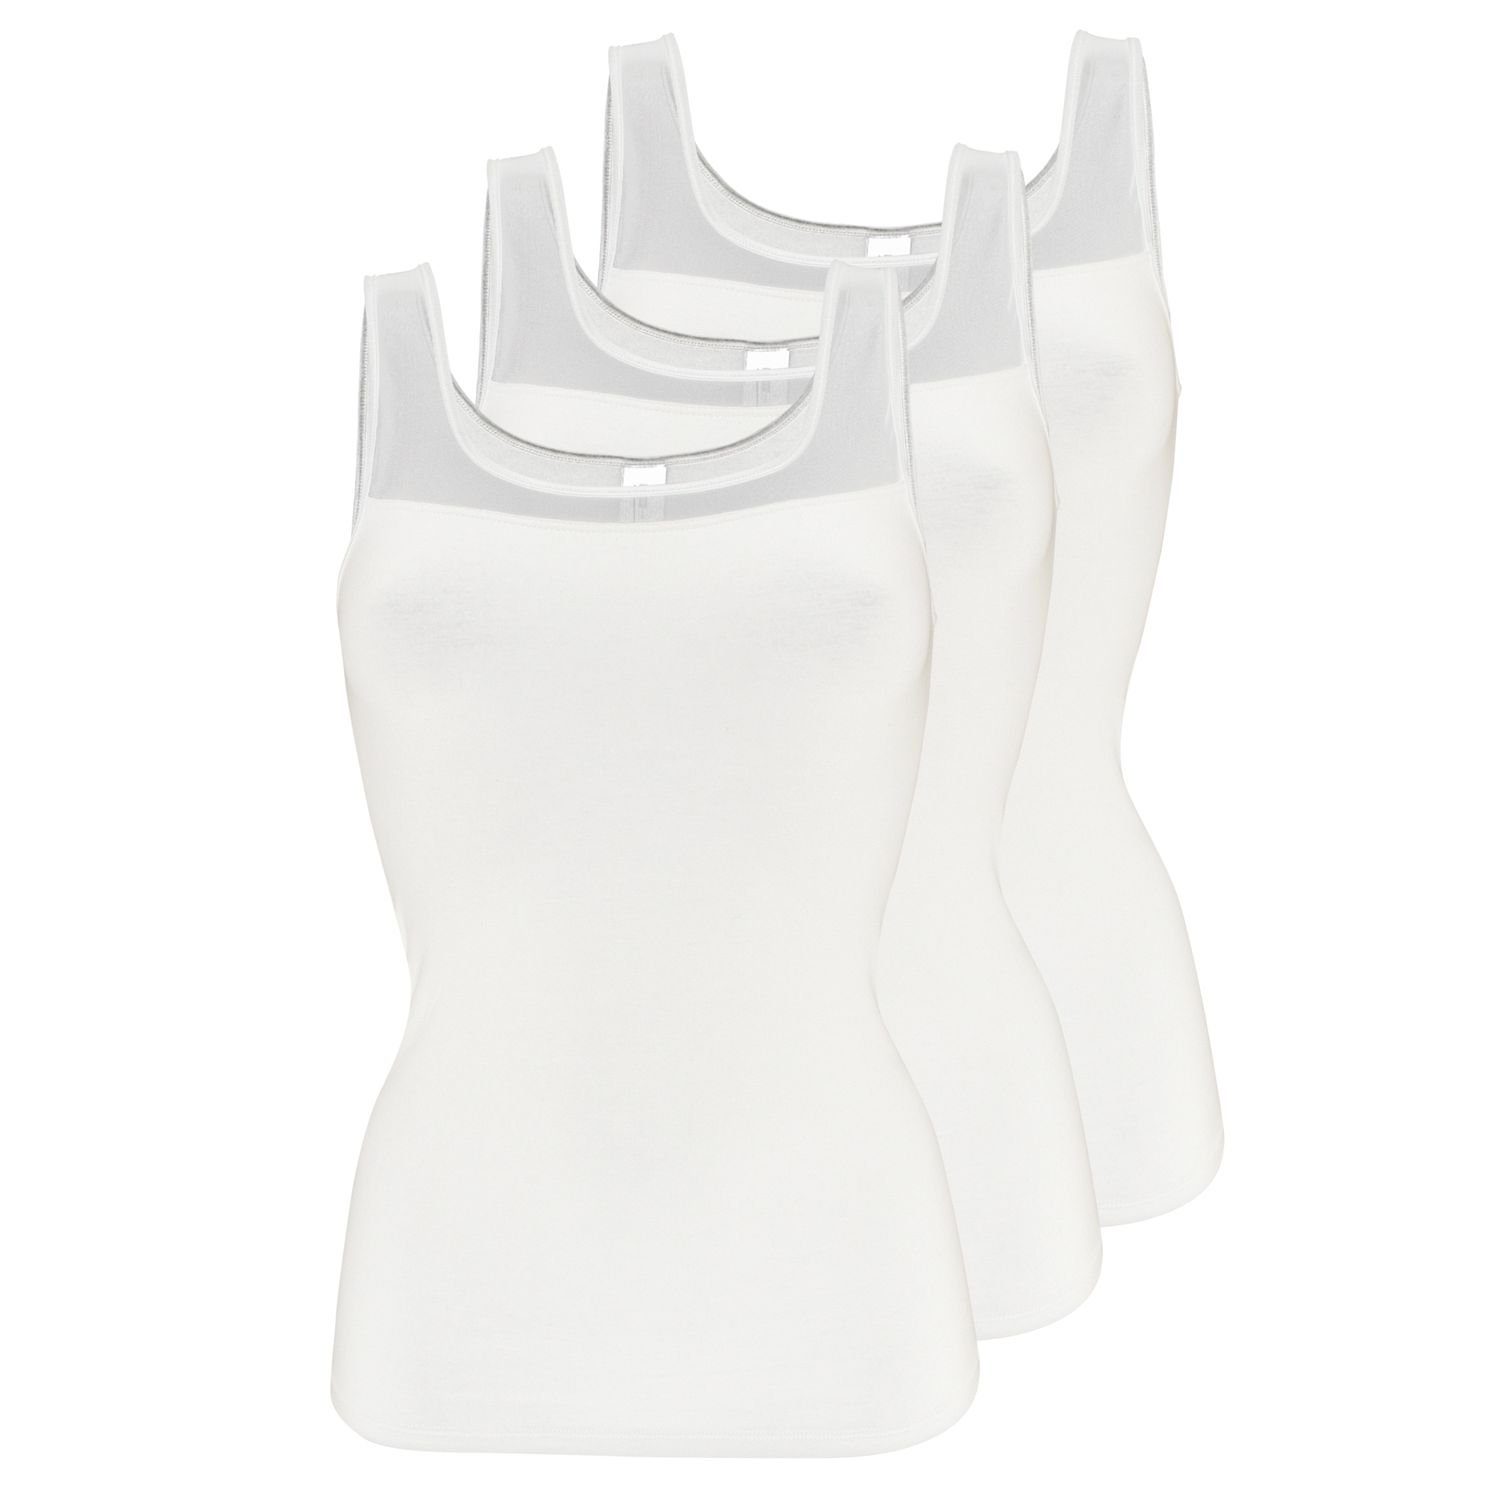 Pompadour Unterhemd (Mehrpack, 3-St., 3 Stück) in Modal-Qualität mit feinem elastischen Tüll-Einsatz im 3er Pack Weiß